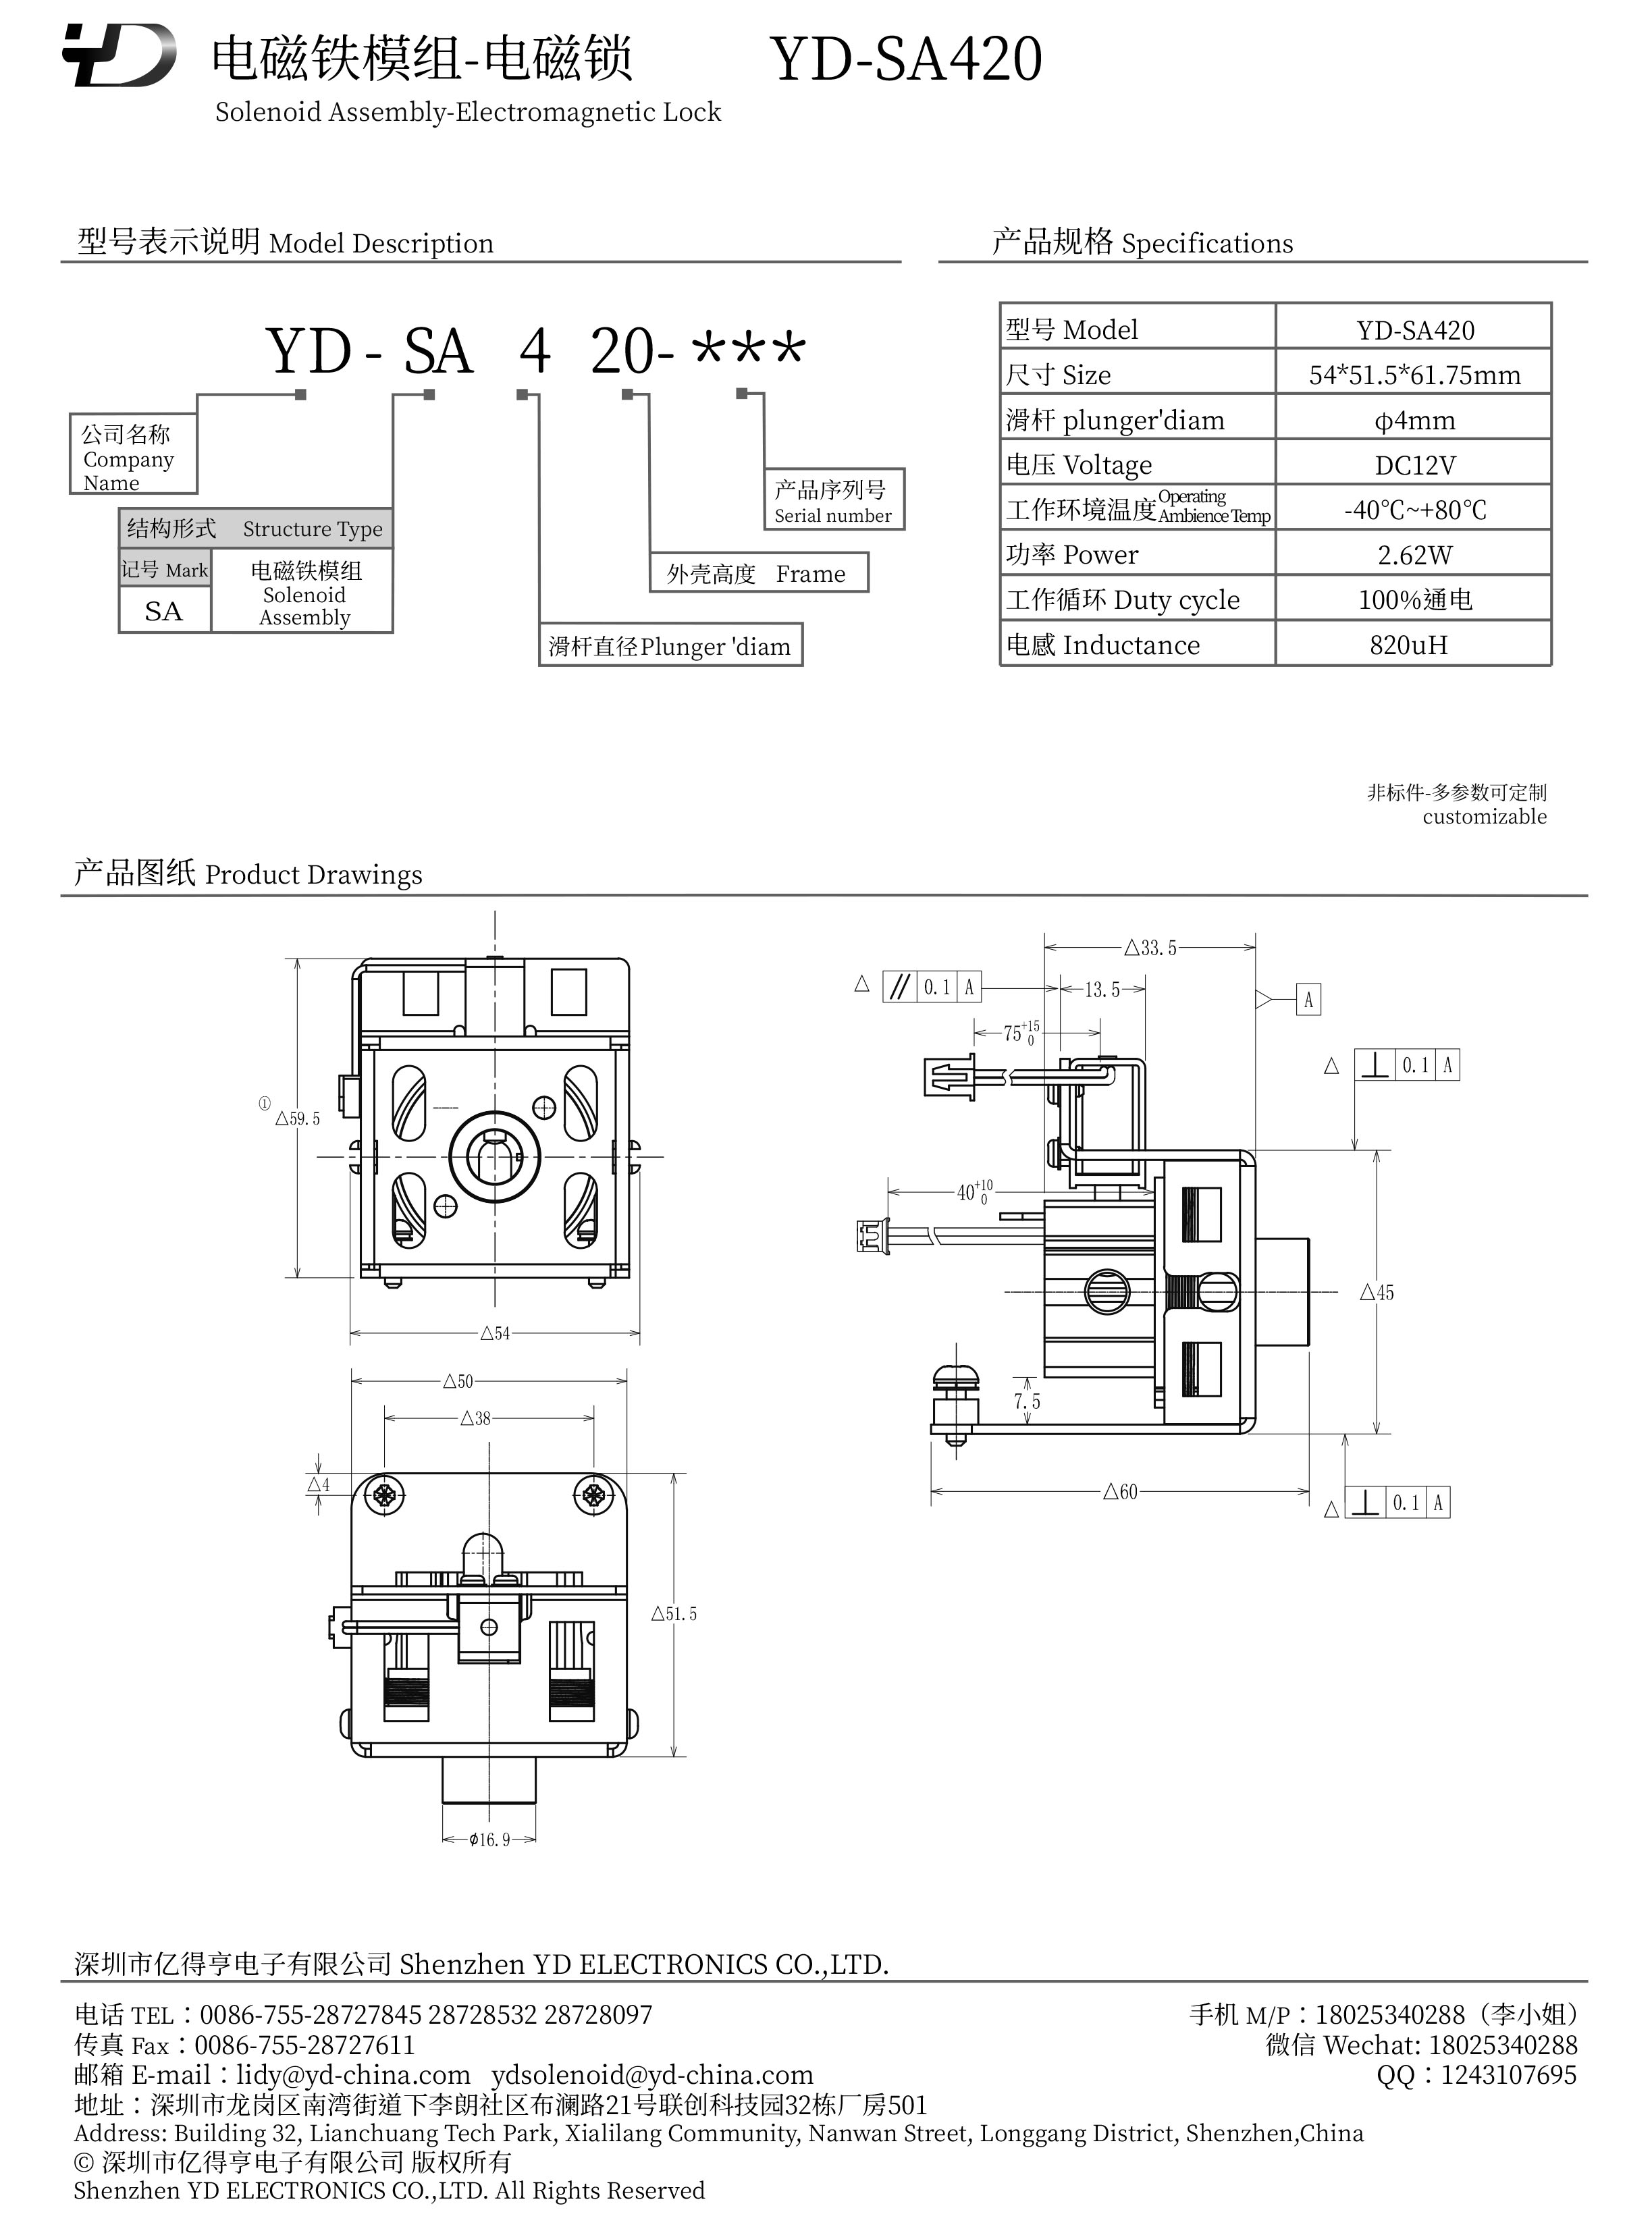 YD-SA420-PDF.jpg